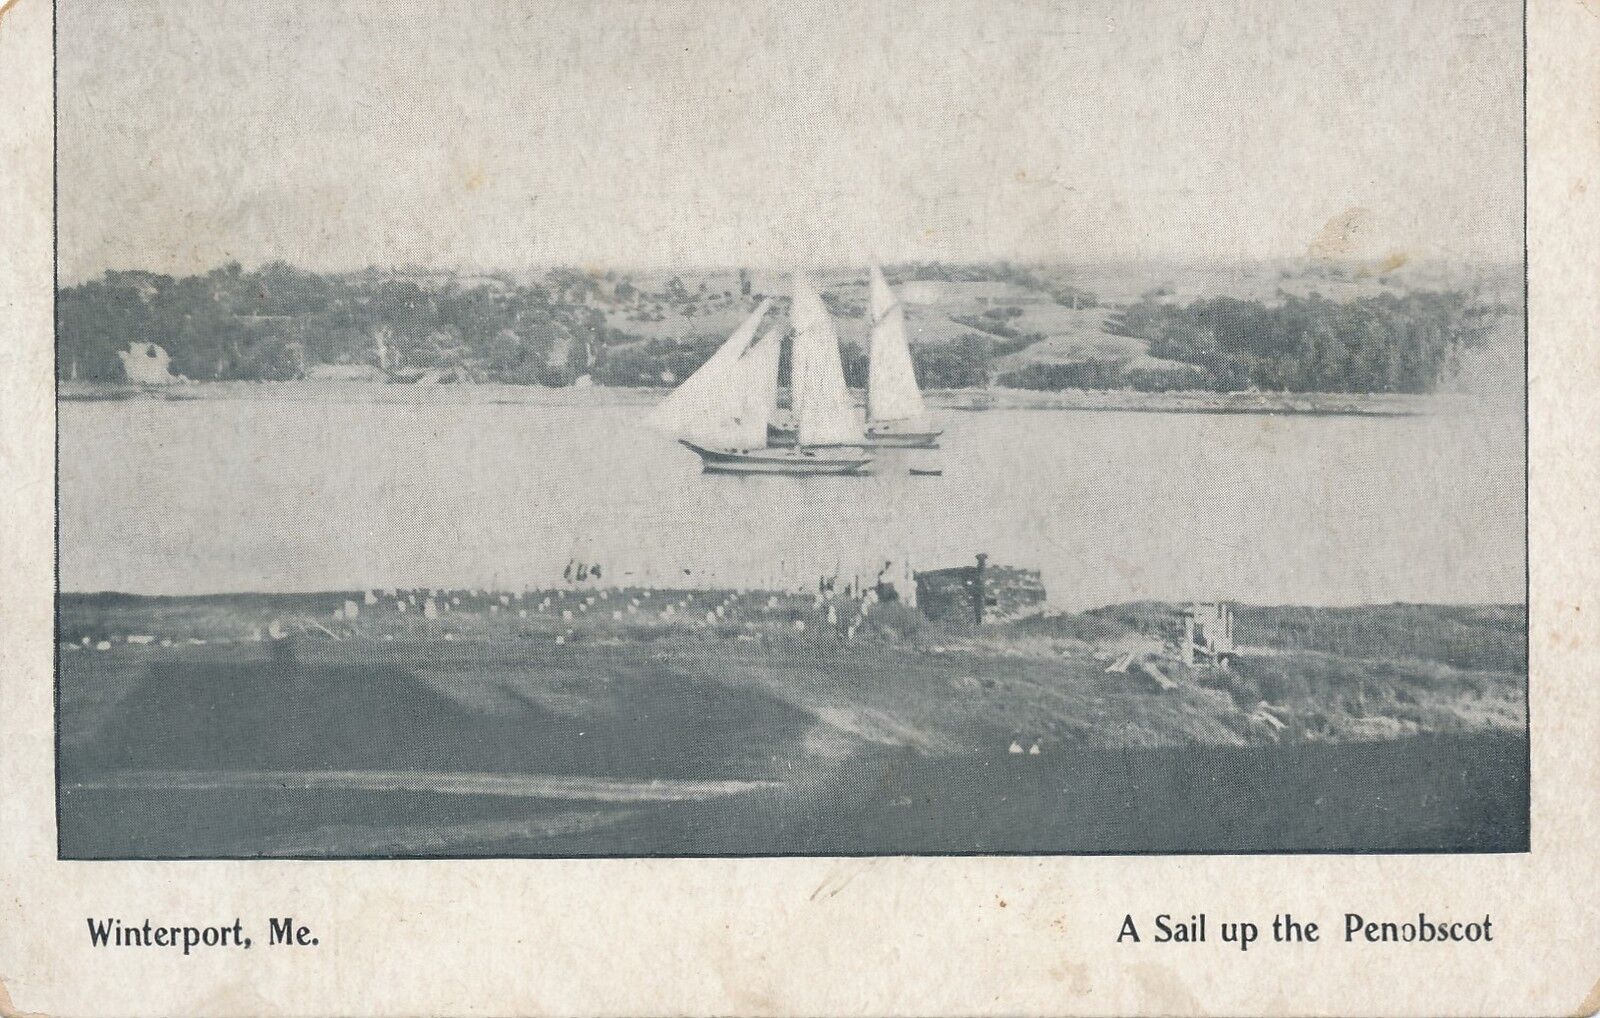 WINTERPORT ME – A Sail Up the Penobscot – udb (pre 1908)